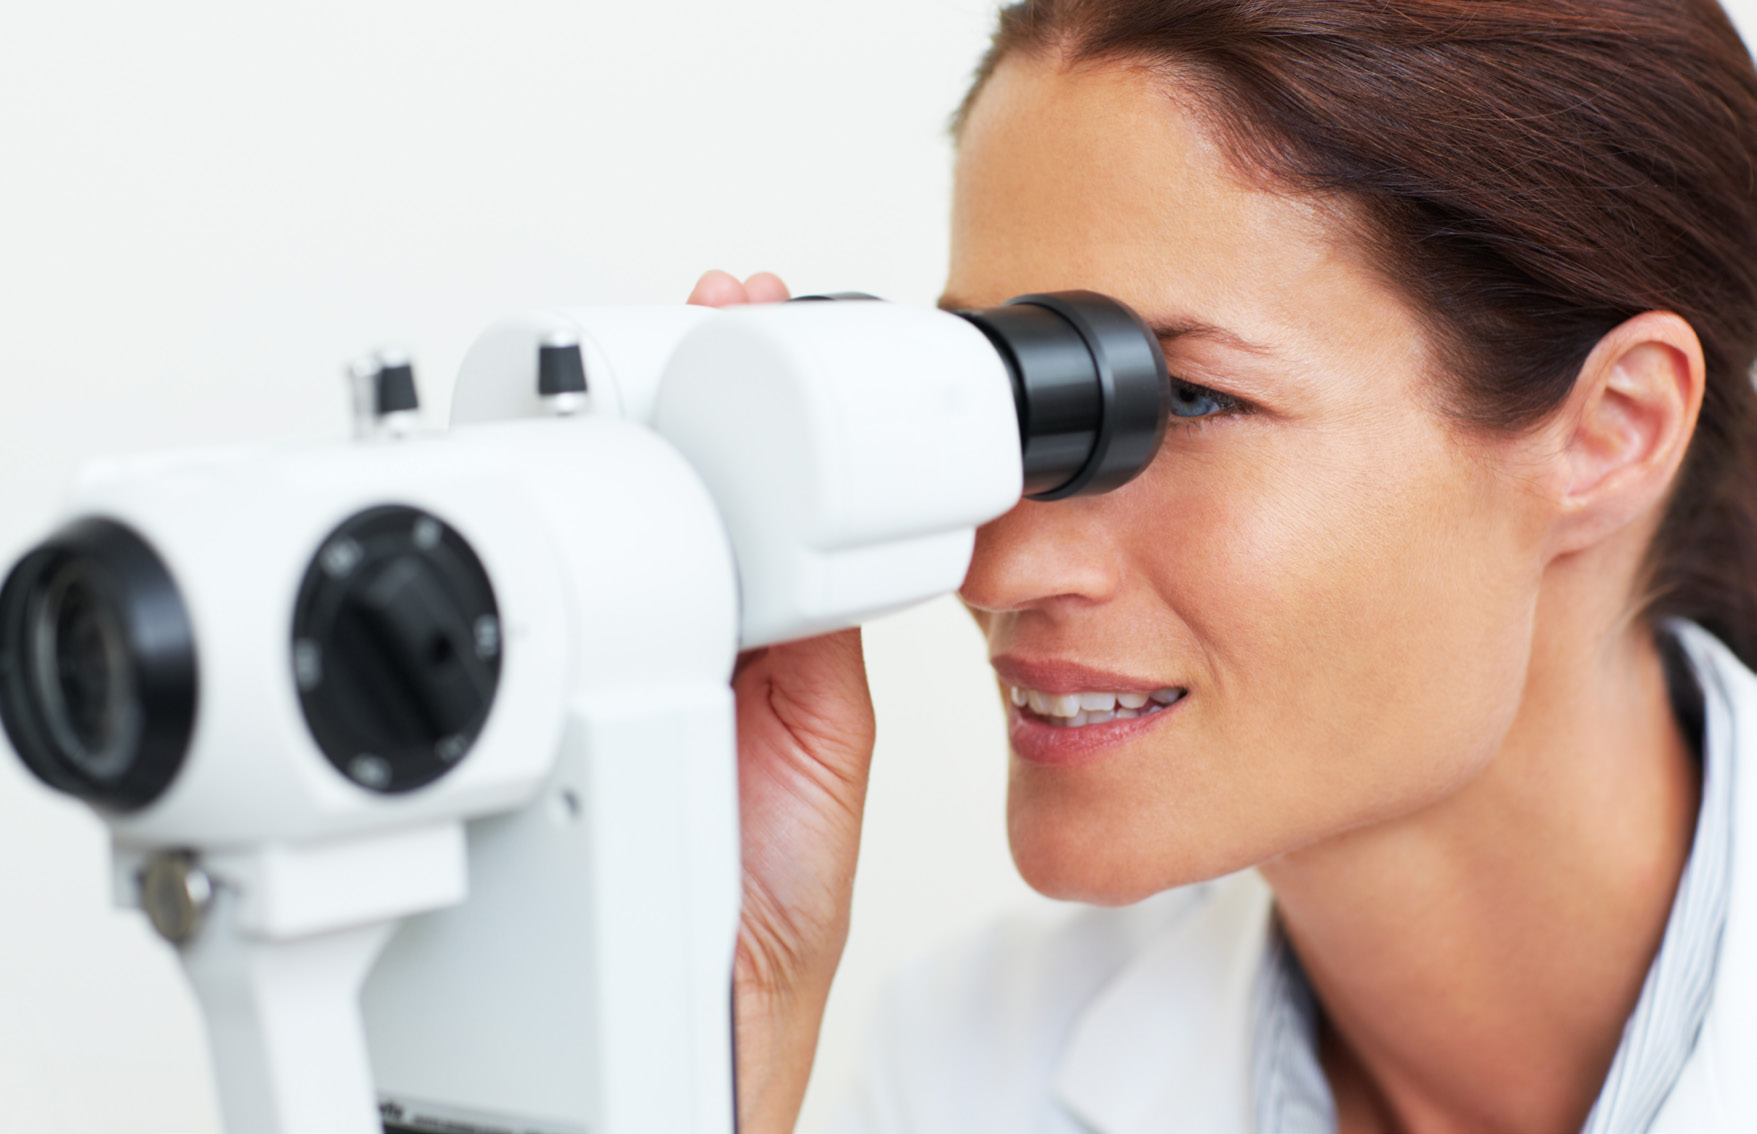 Symptomen Fuchs endotheel dystrofie is een aandoening die langzaam verslechtert en die meestal beide ogen treft. De aandoening komt vier keer meer bij vrouwen voor dan bij mannen.